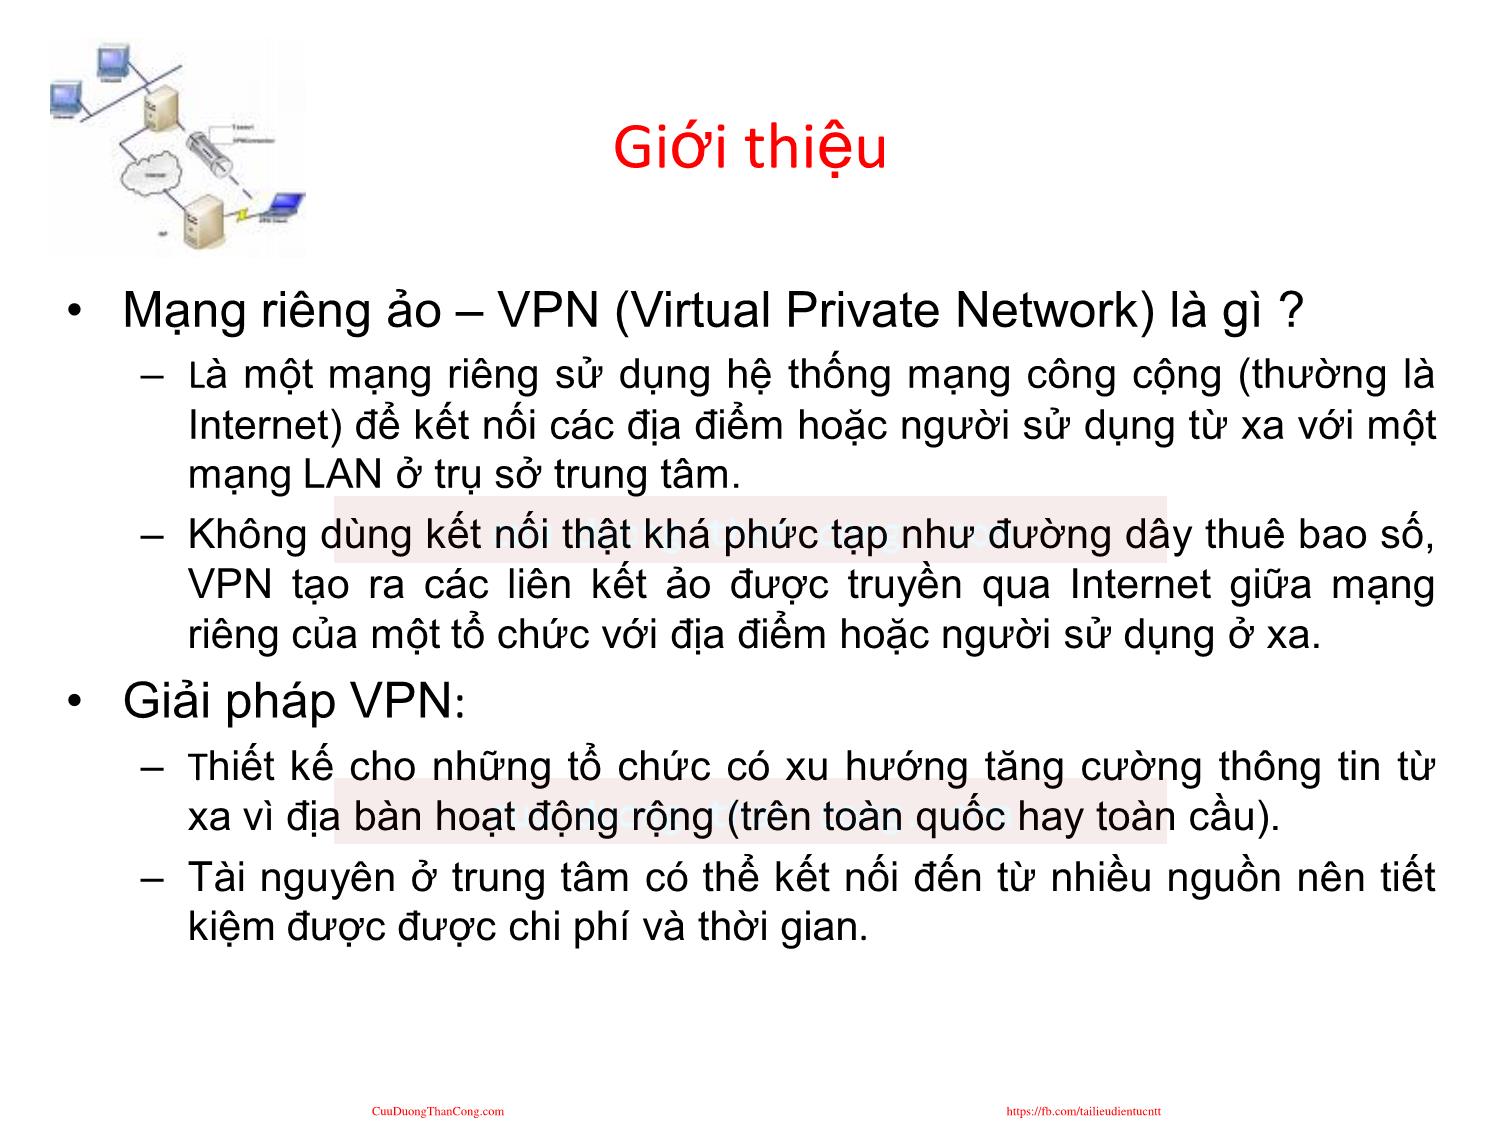 An ninh mạng - Chương 7: Mạng riêng ảo (Virtual Personal Network - VPN) trang 2